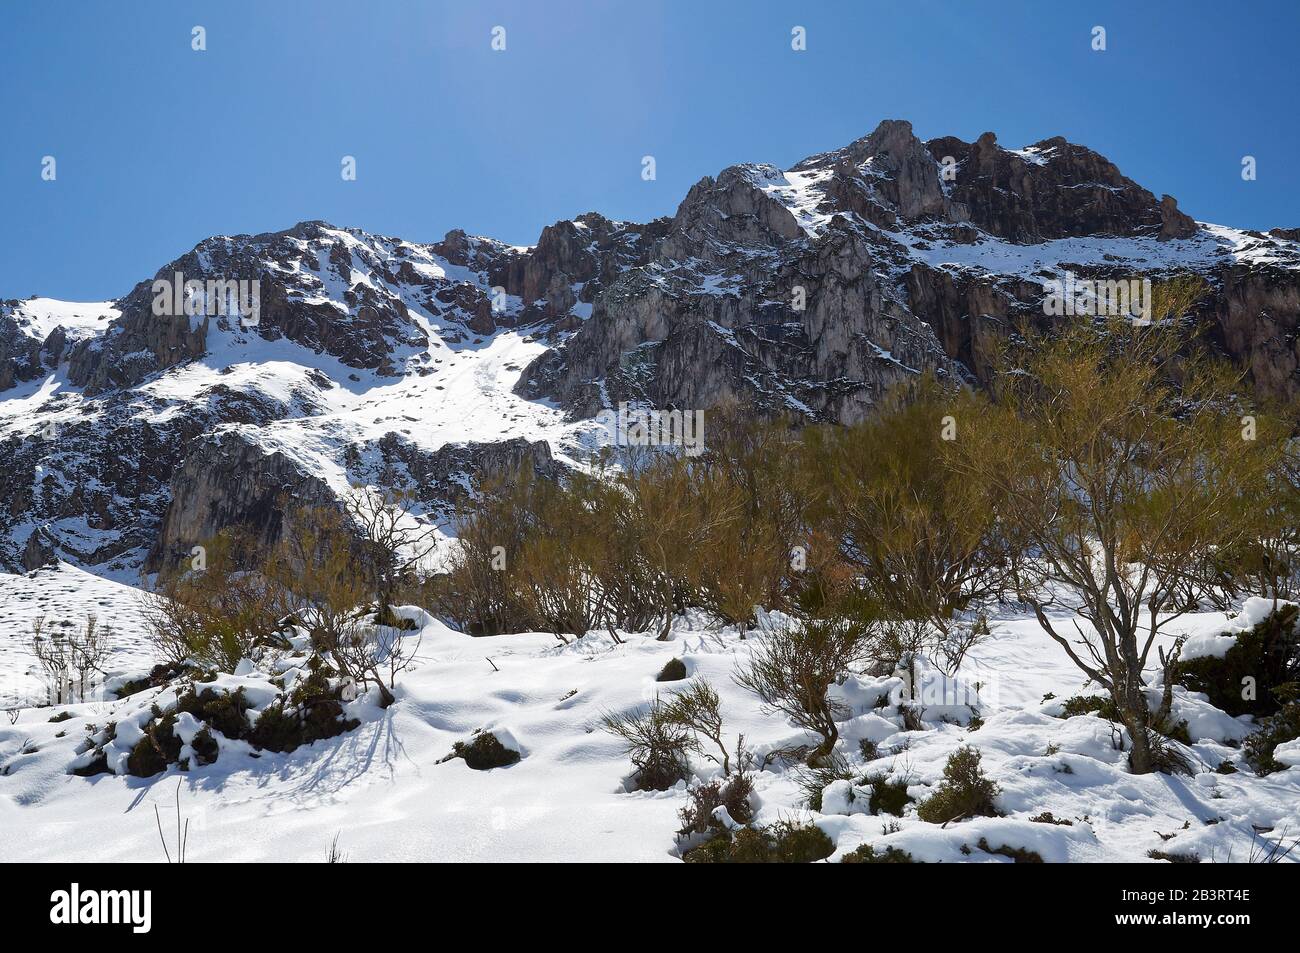 Paisaje nevado invernal con nieve prístina recién caída en un día soleado en PR.AS-15 sendero (Valle del Lago, Parque Natural de Somiedo, Asturias, España) Foto de stock